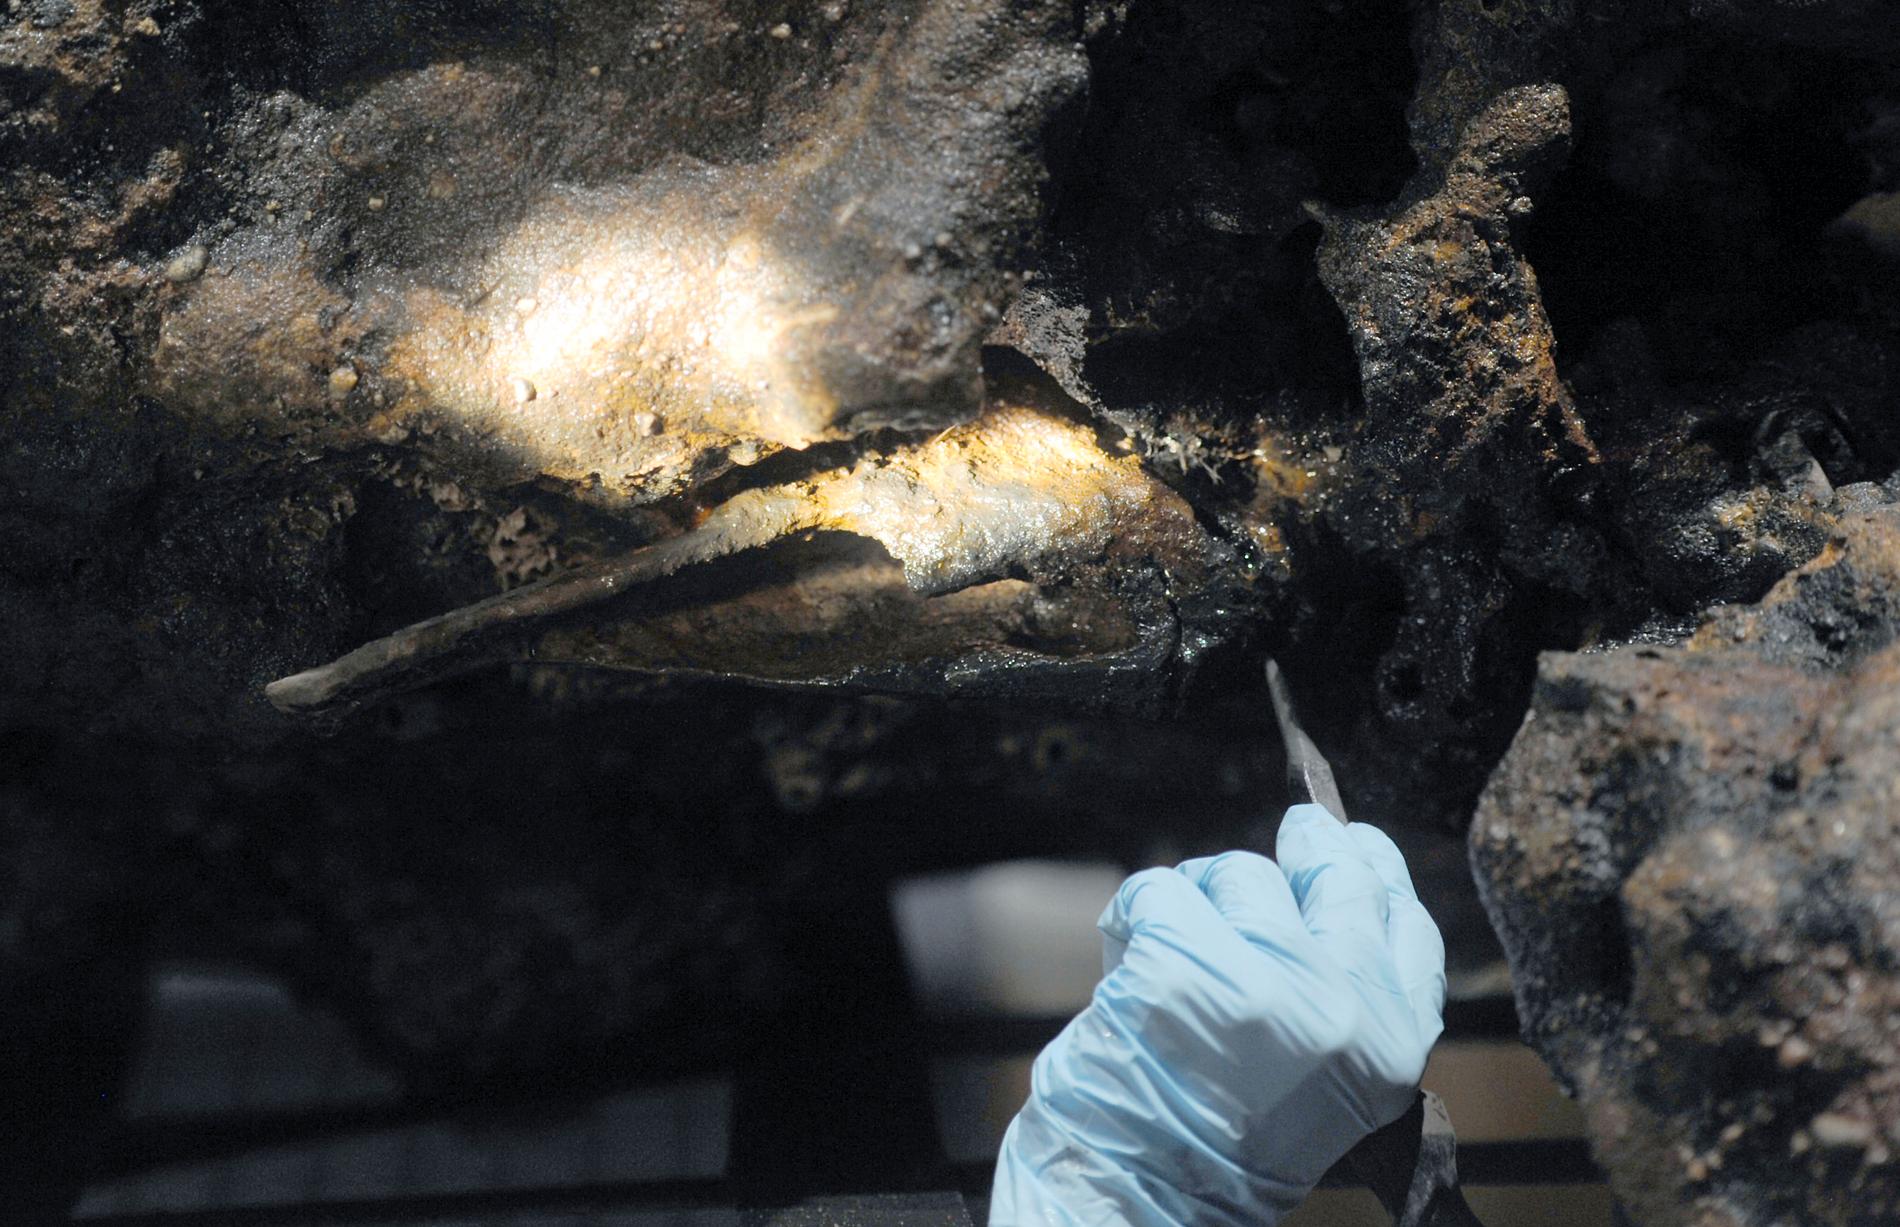 Arkeologen Mary Kesten Zahn undersöker ett ben från vraket för att avgöra om det verkligen är kvarlevorna från ”Black Sam”.